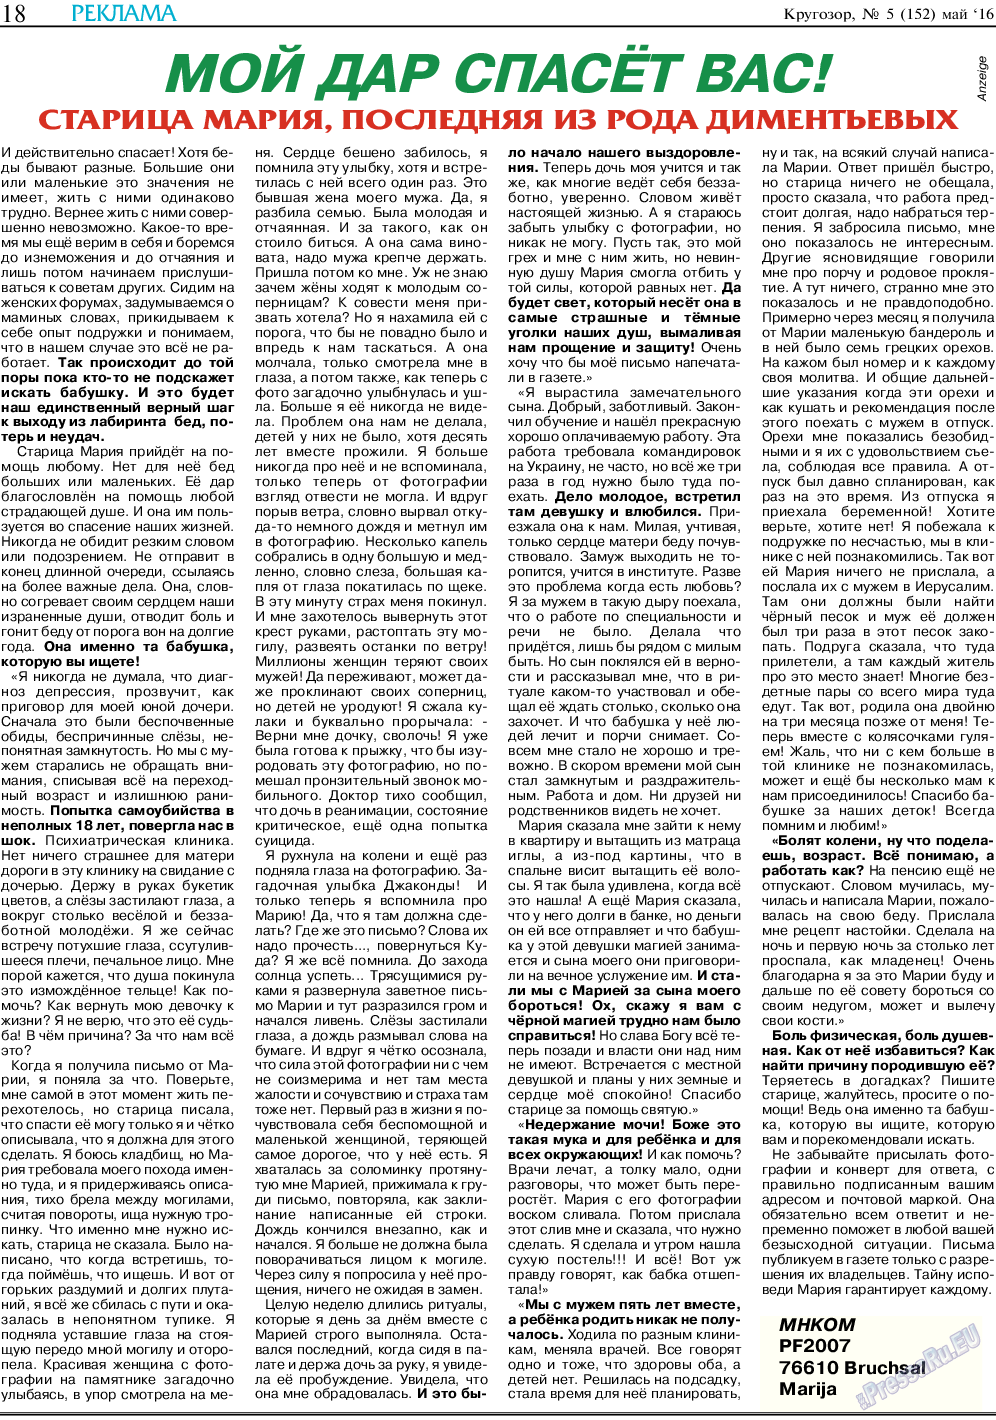 Кругозор (газета). 2016 год, номер 5, стр. 18